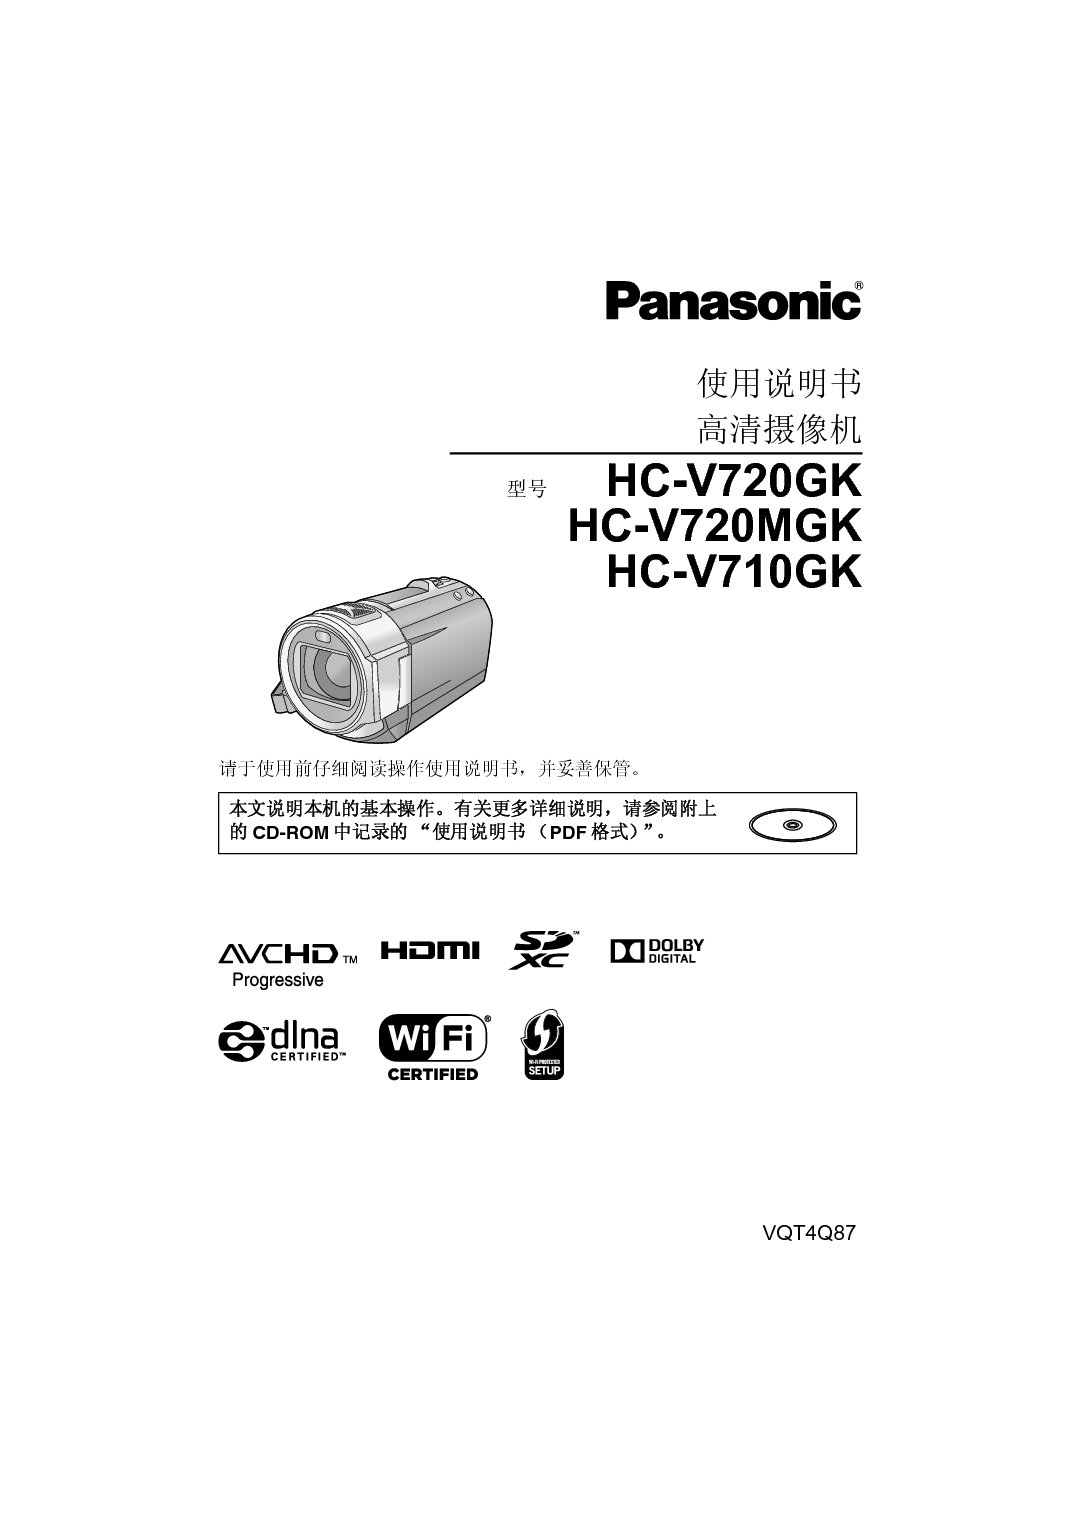 松下 Panasonic HC-V710GK 说明书 封面